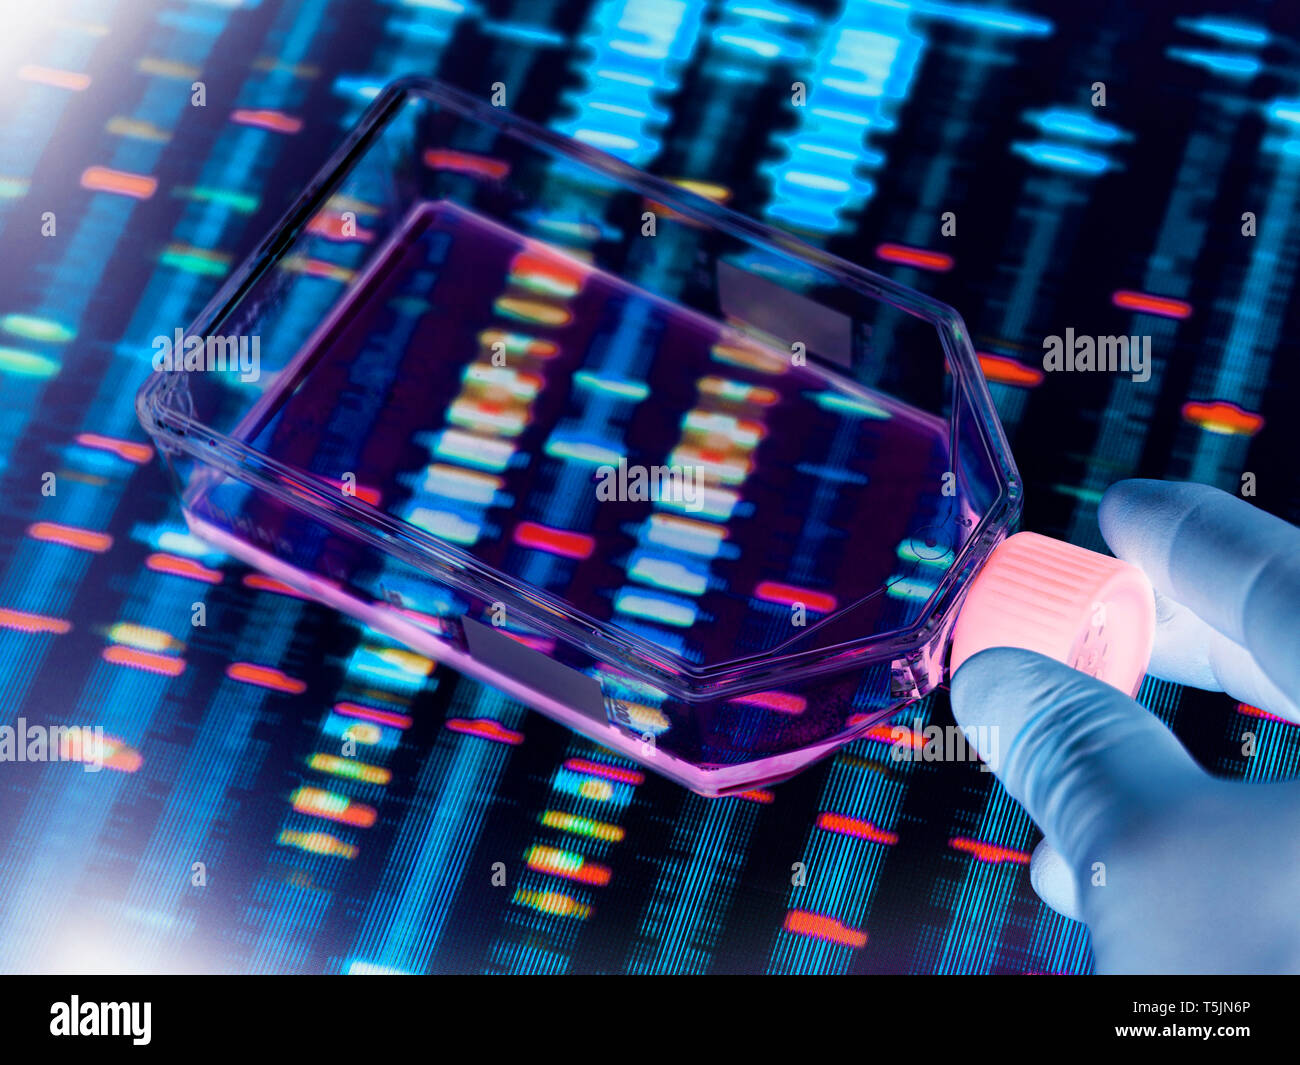 Le génie génétique, les cellules de visualisation scientifique dans une culture avec un adulte de l'ADN sur un écran à l'arrière-plan illustrant la modification génétique Banque D'Images